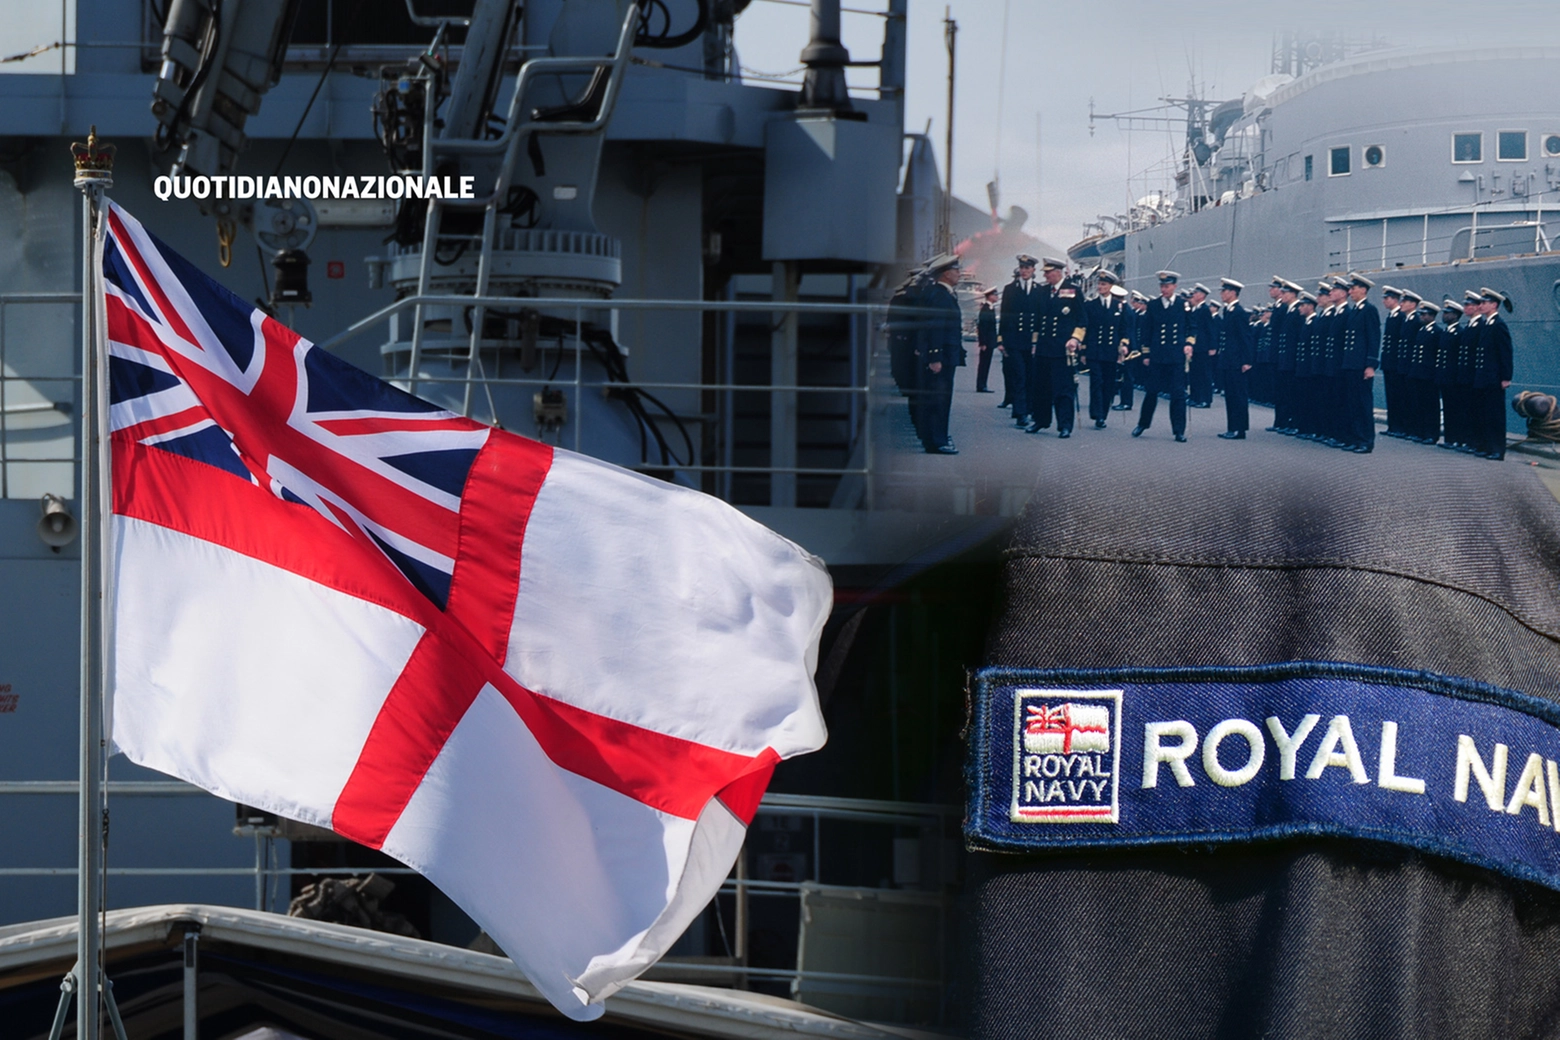 Scandalo nella Royal Navy, media: indagine per abusi sessuali (repertorio)